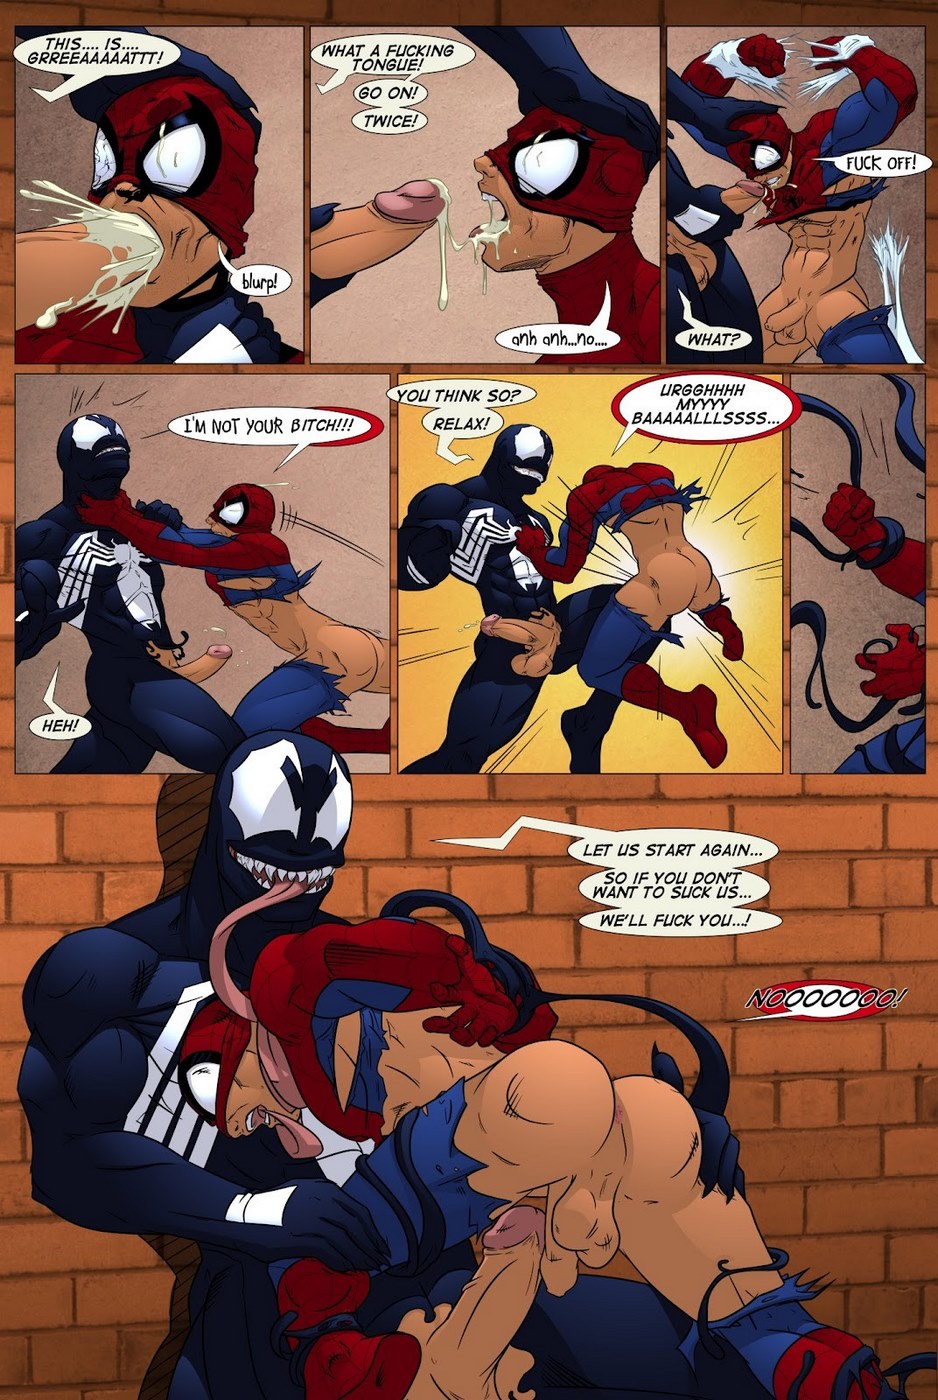 Shooters (Spider-Man Venom) .